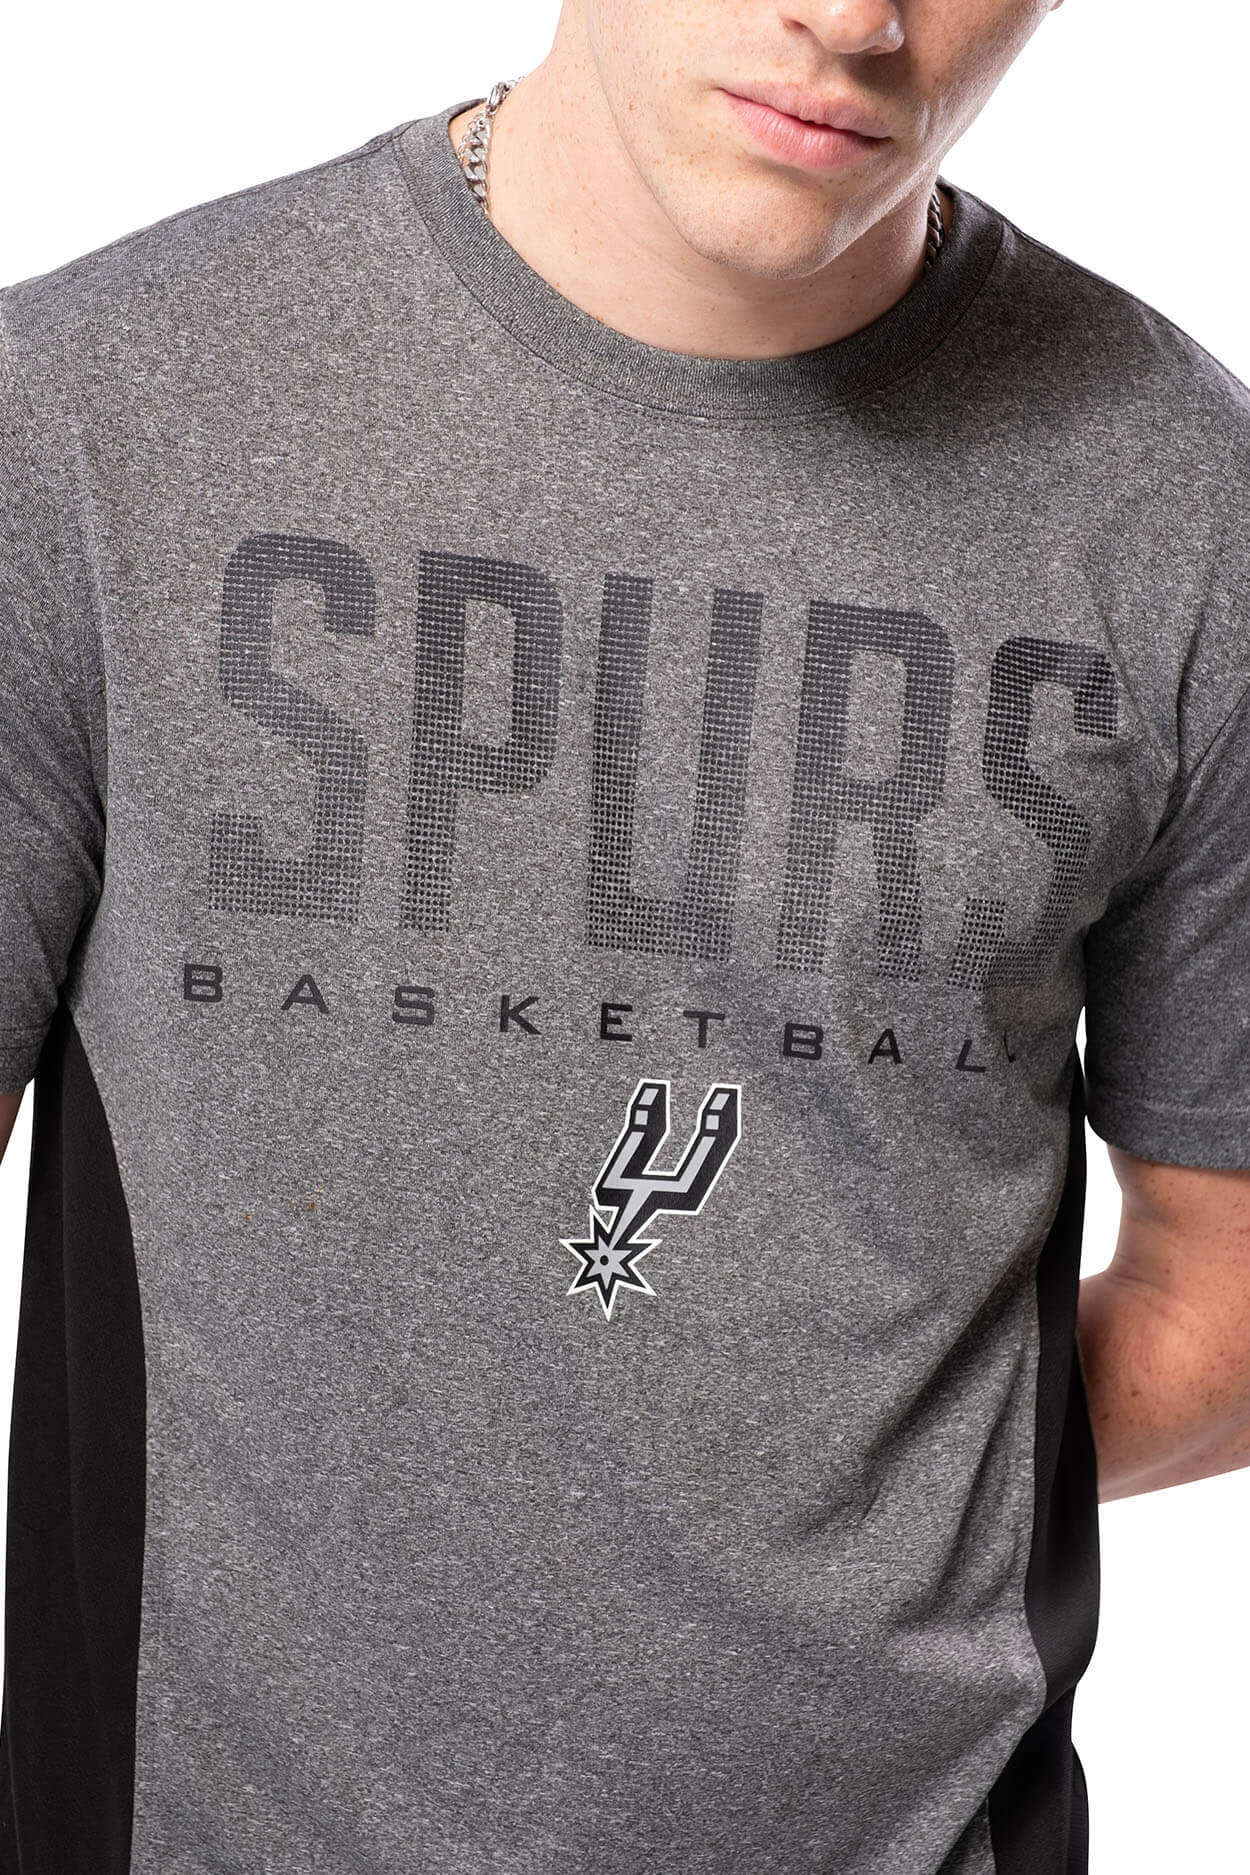 NBA San Antonio Spurs Men's Short Sleeve Tee|San Antonio Spurs